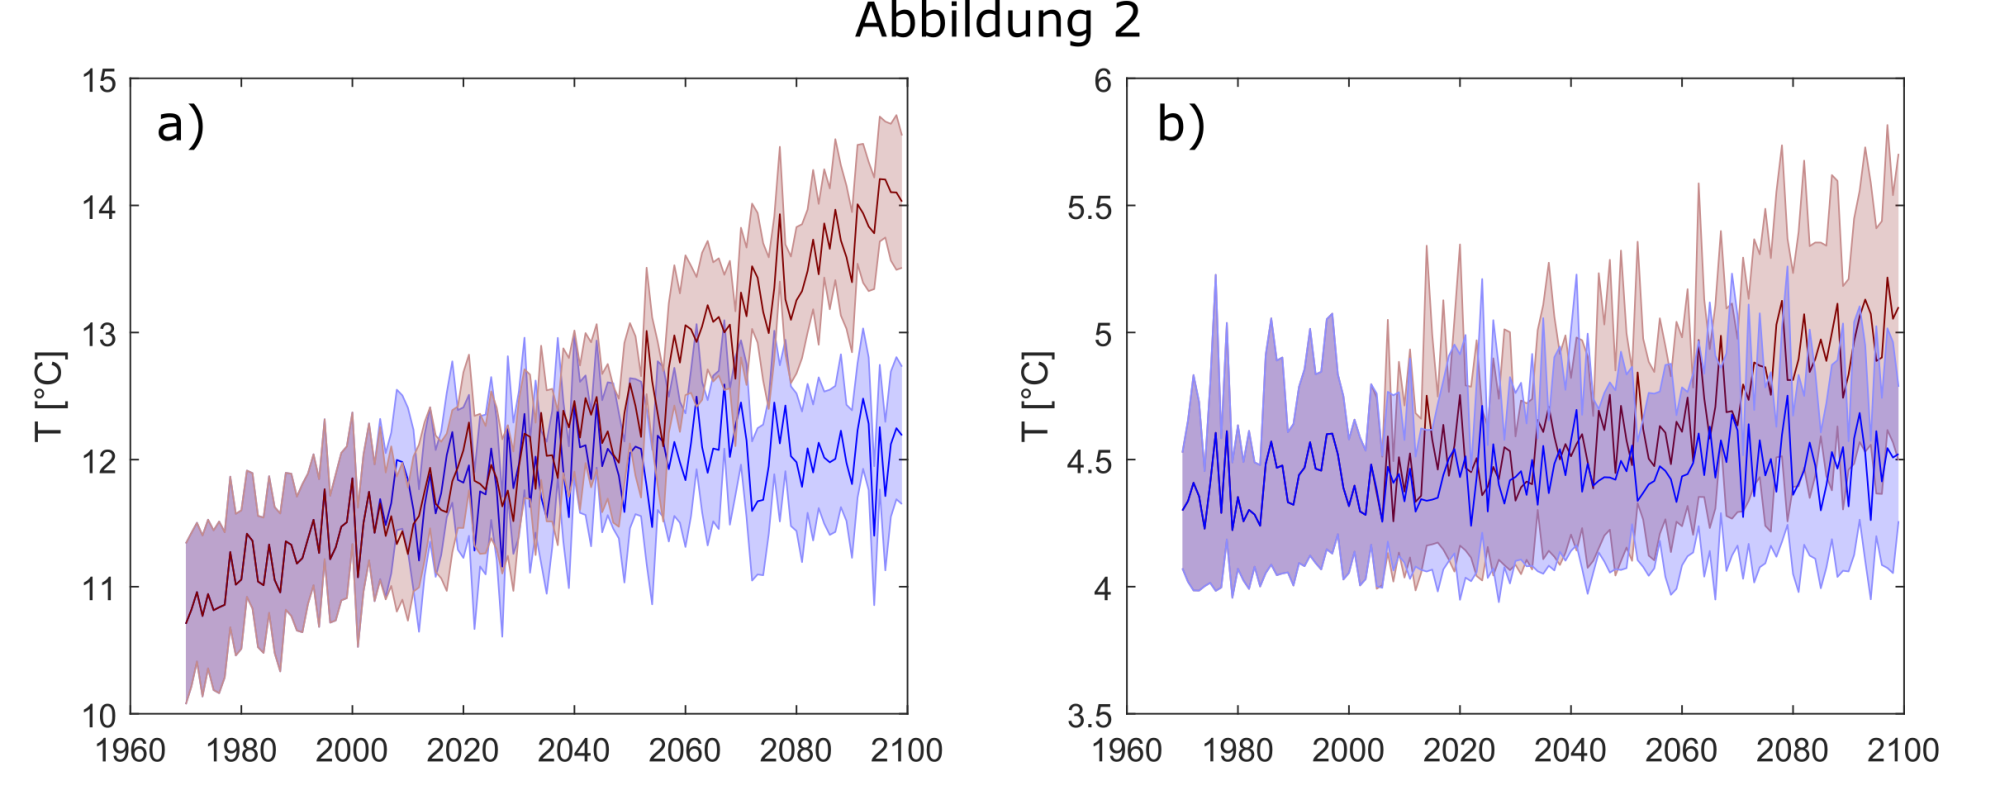 Links ein Plot mit den prognostizierten Oberflächentemperaturen der Seen von 2000 bis 2100. Die rote Kurve zeigt einen starken Anstieg und entspricht den Vorhersagen der pessimistischen Annahme für die zukünftigen CO2-Emissionen. Die blaue Kurve zeigt kaum einen Anstieg und enspricht einer optimistischen Annahme. Rechts dasselbe für die Tiefenwassertemperaturen. Hier ist der Anstieg für die pessimistische Annahme viel geringer, für das optimistische Szenario ist keine Veränderung erkennbar.